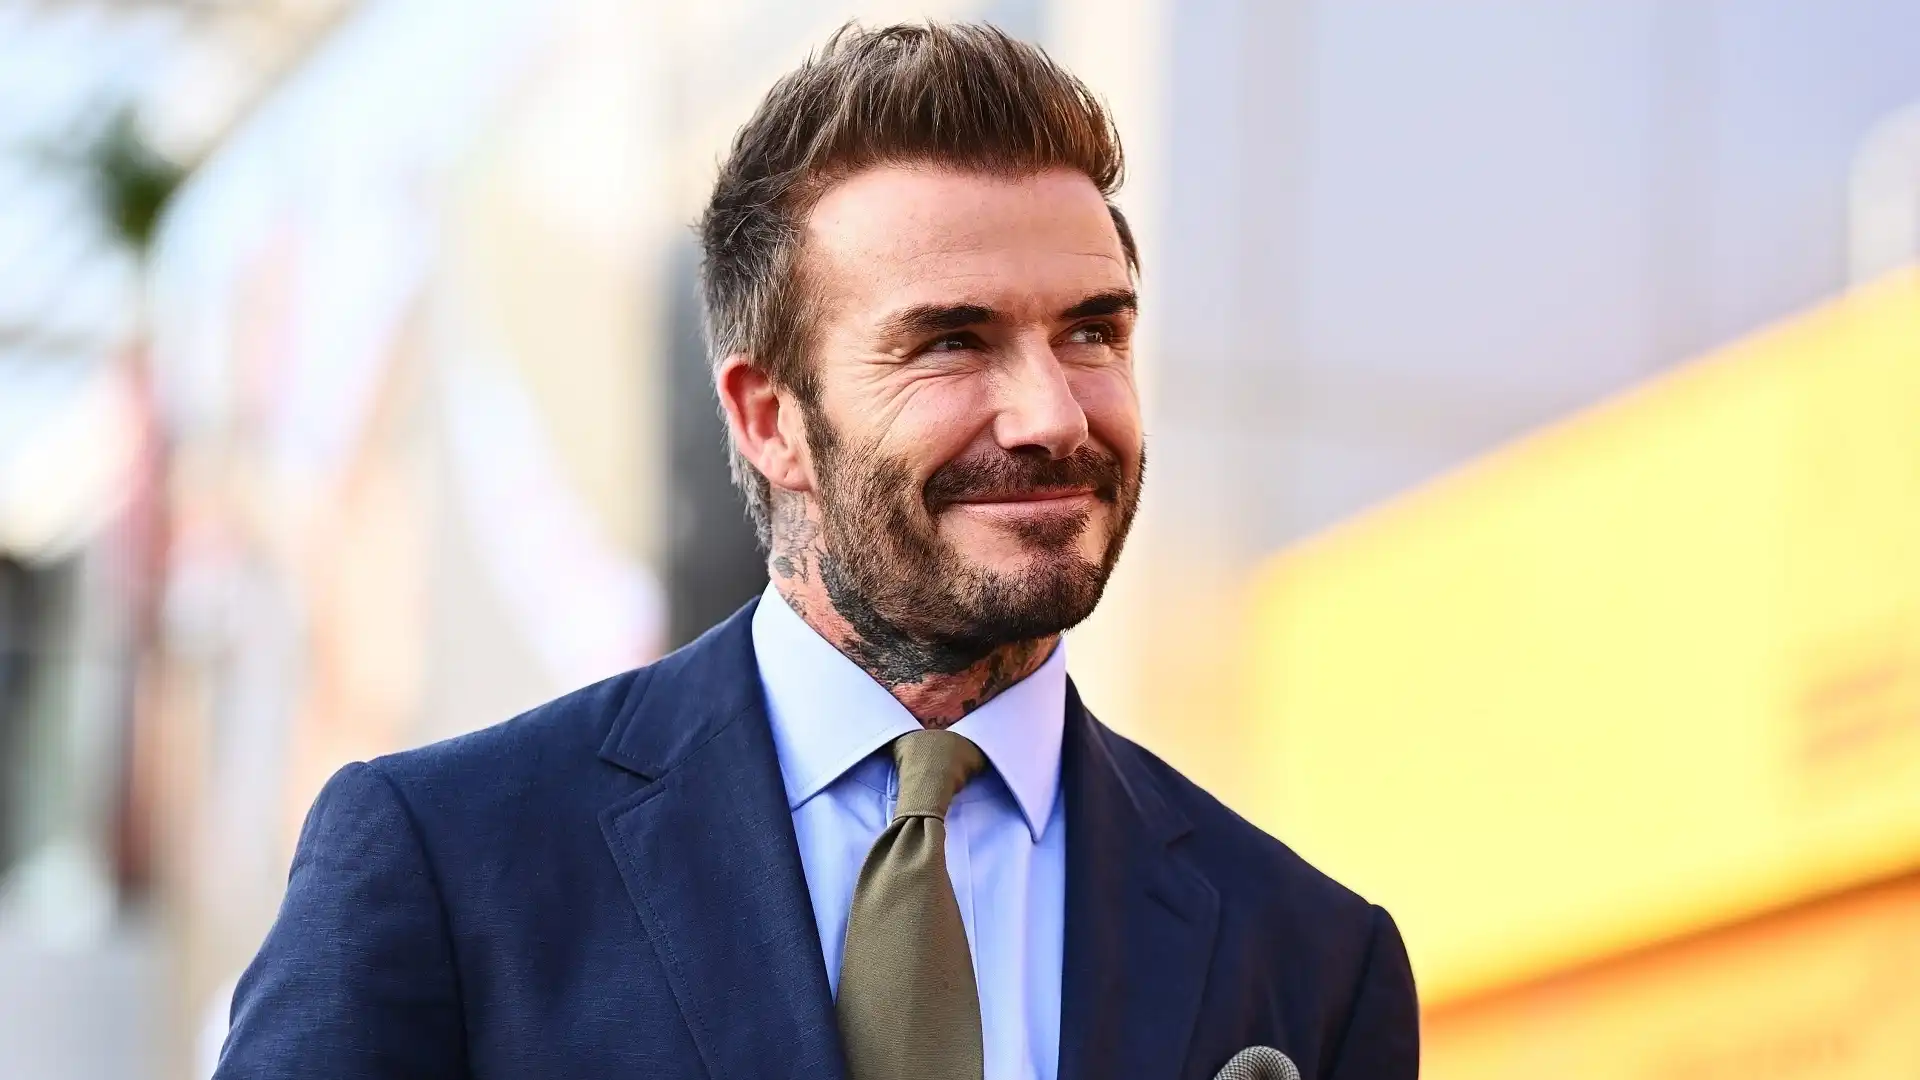 David Beckham (Inghilterra): patrimonio complessivo 400 milioni di dollari. Giocatore popolarissimo tra gli anni '90 e 2000, il suo patrimonio è esploso dopo il trasferimento negli Stati Uniti. Ha fondato l'Inter Miami